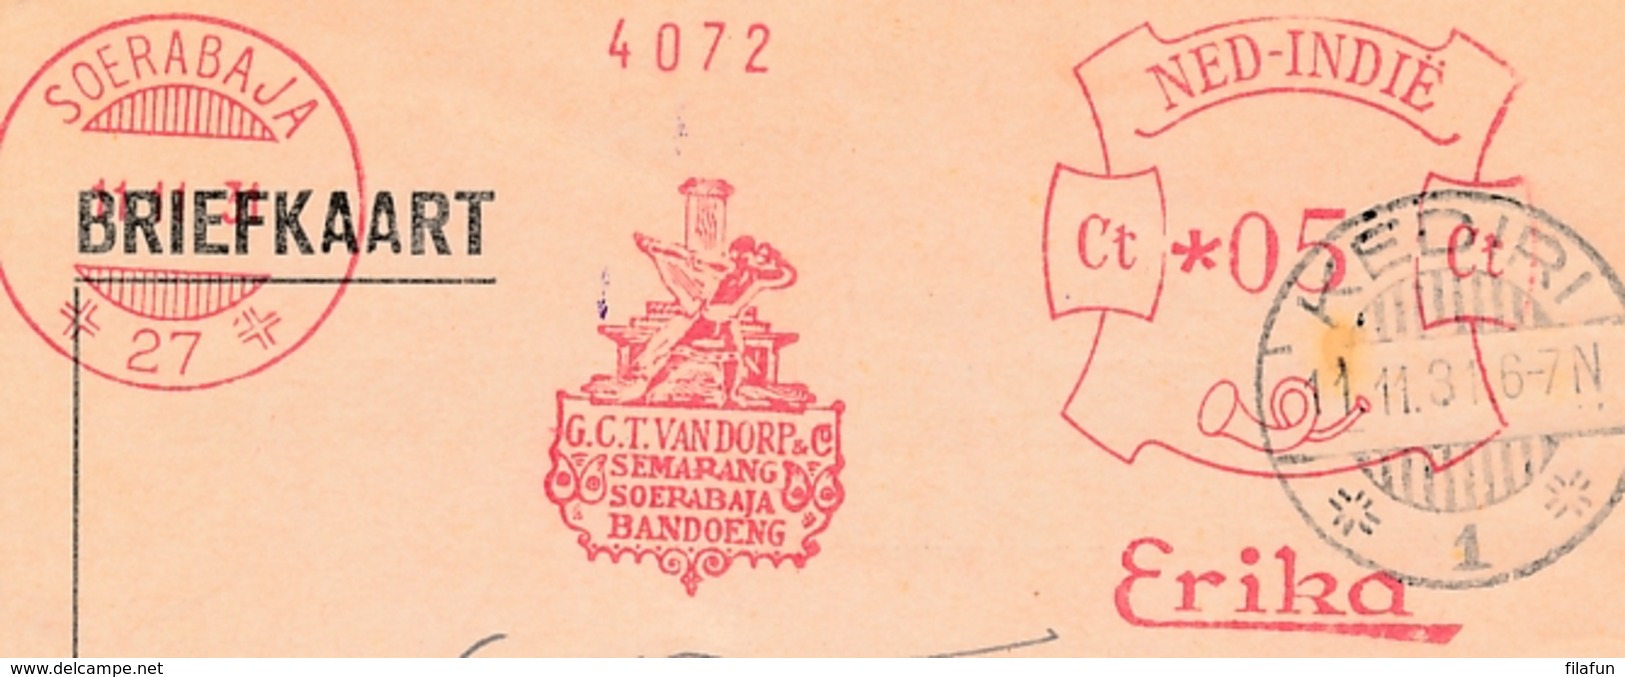 Nederlands Indië - 1931 - Briefkaart Van Frankeermachine 27 (van Dorp) Naar LB KEDIRI/1 - Netherlands Indies